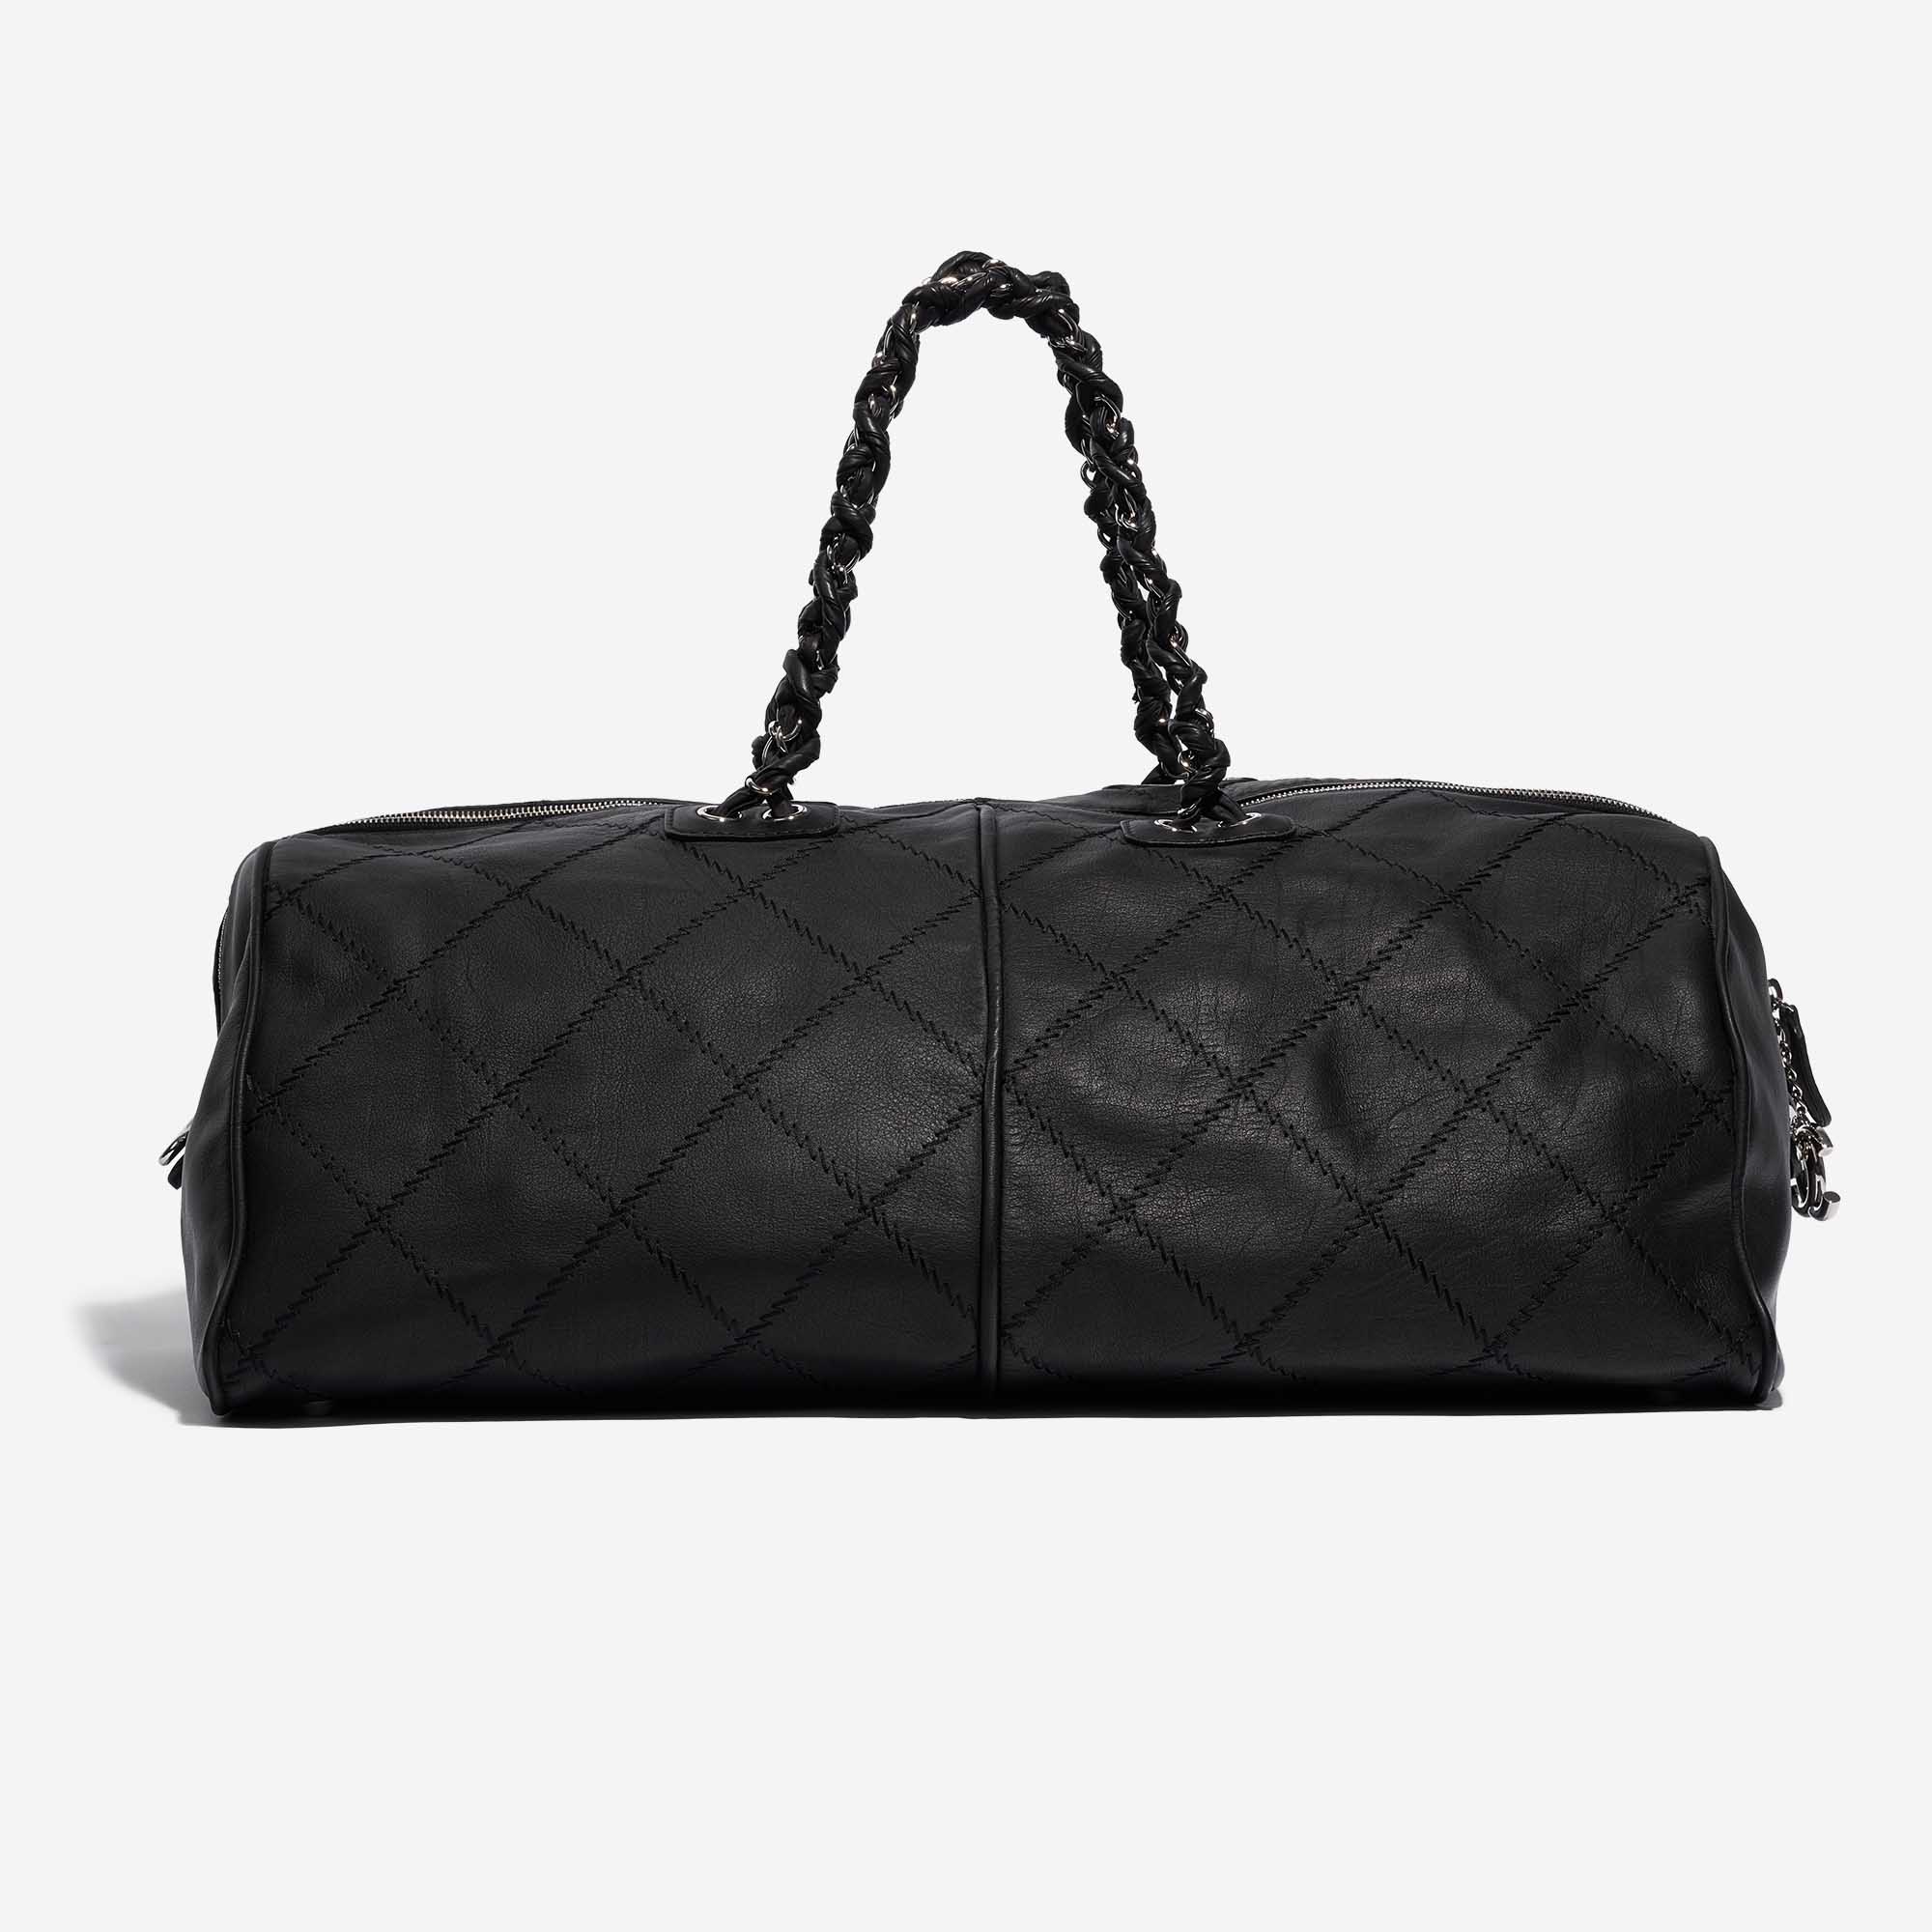 Chanel große Reisetasche Kalbsleder Schwarz 